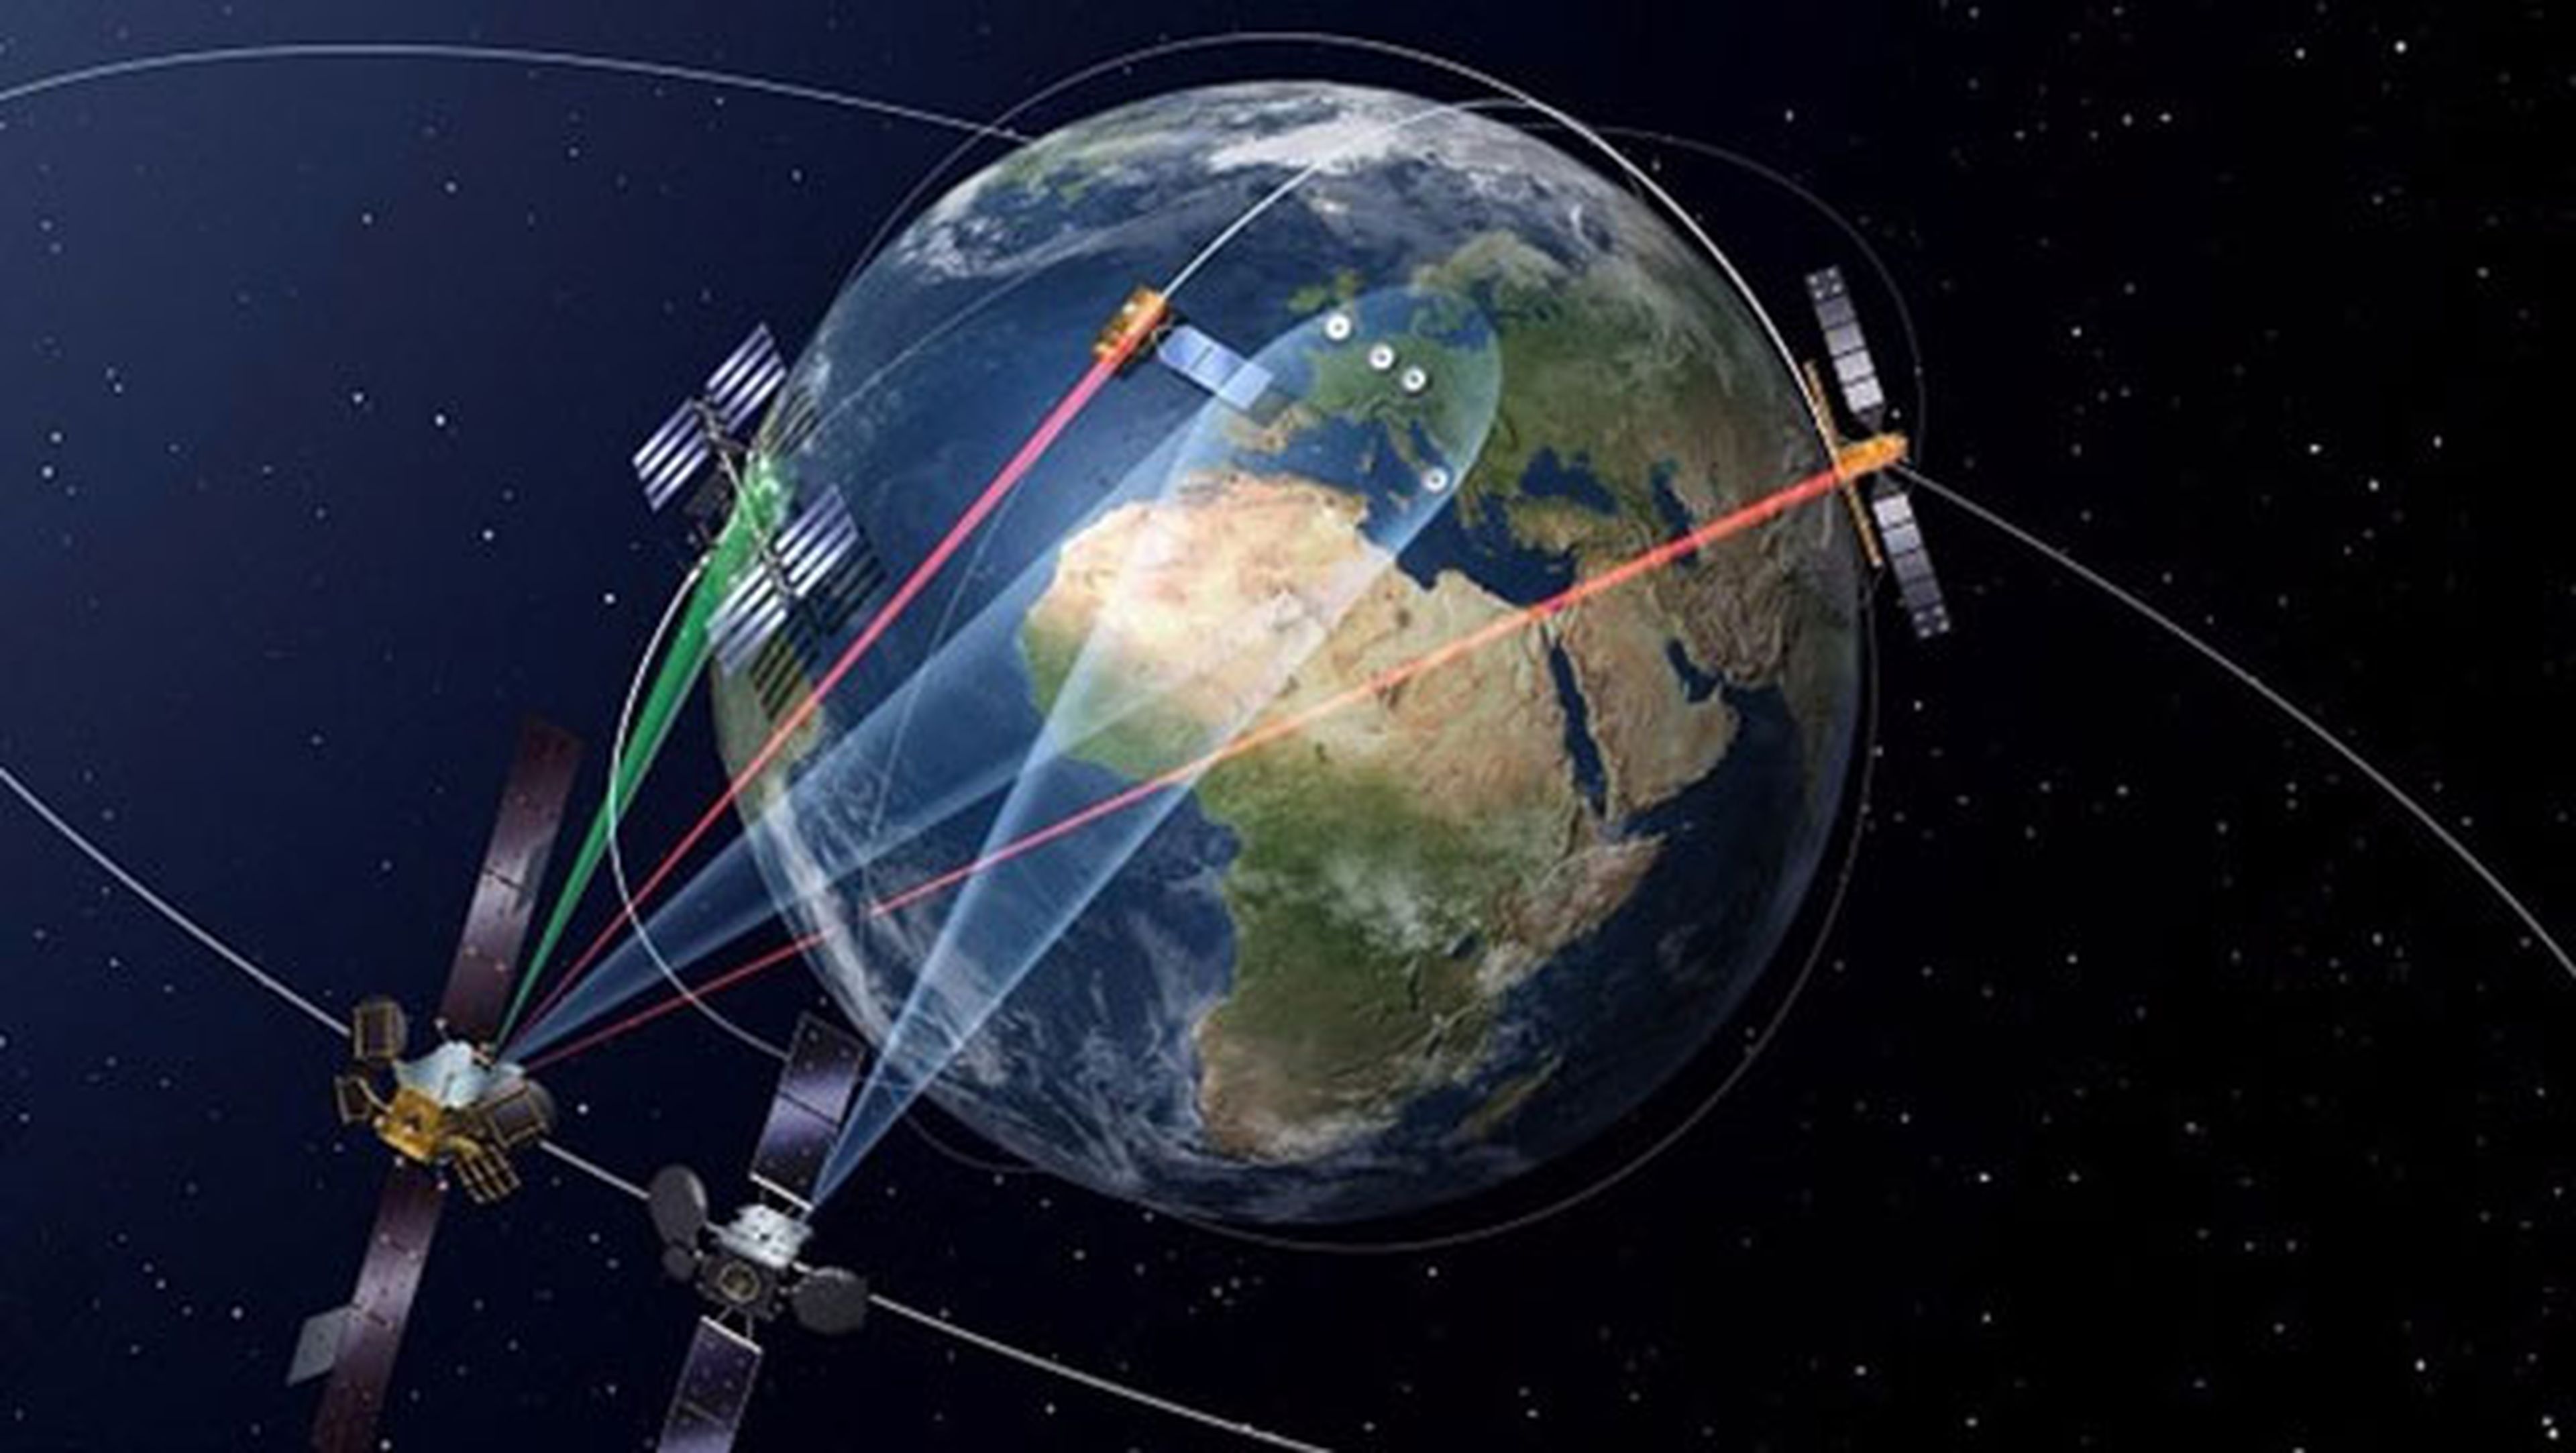 Satelite EDRS-A proporcionara conexion de alta velocidad en el espacio